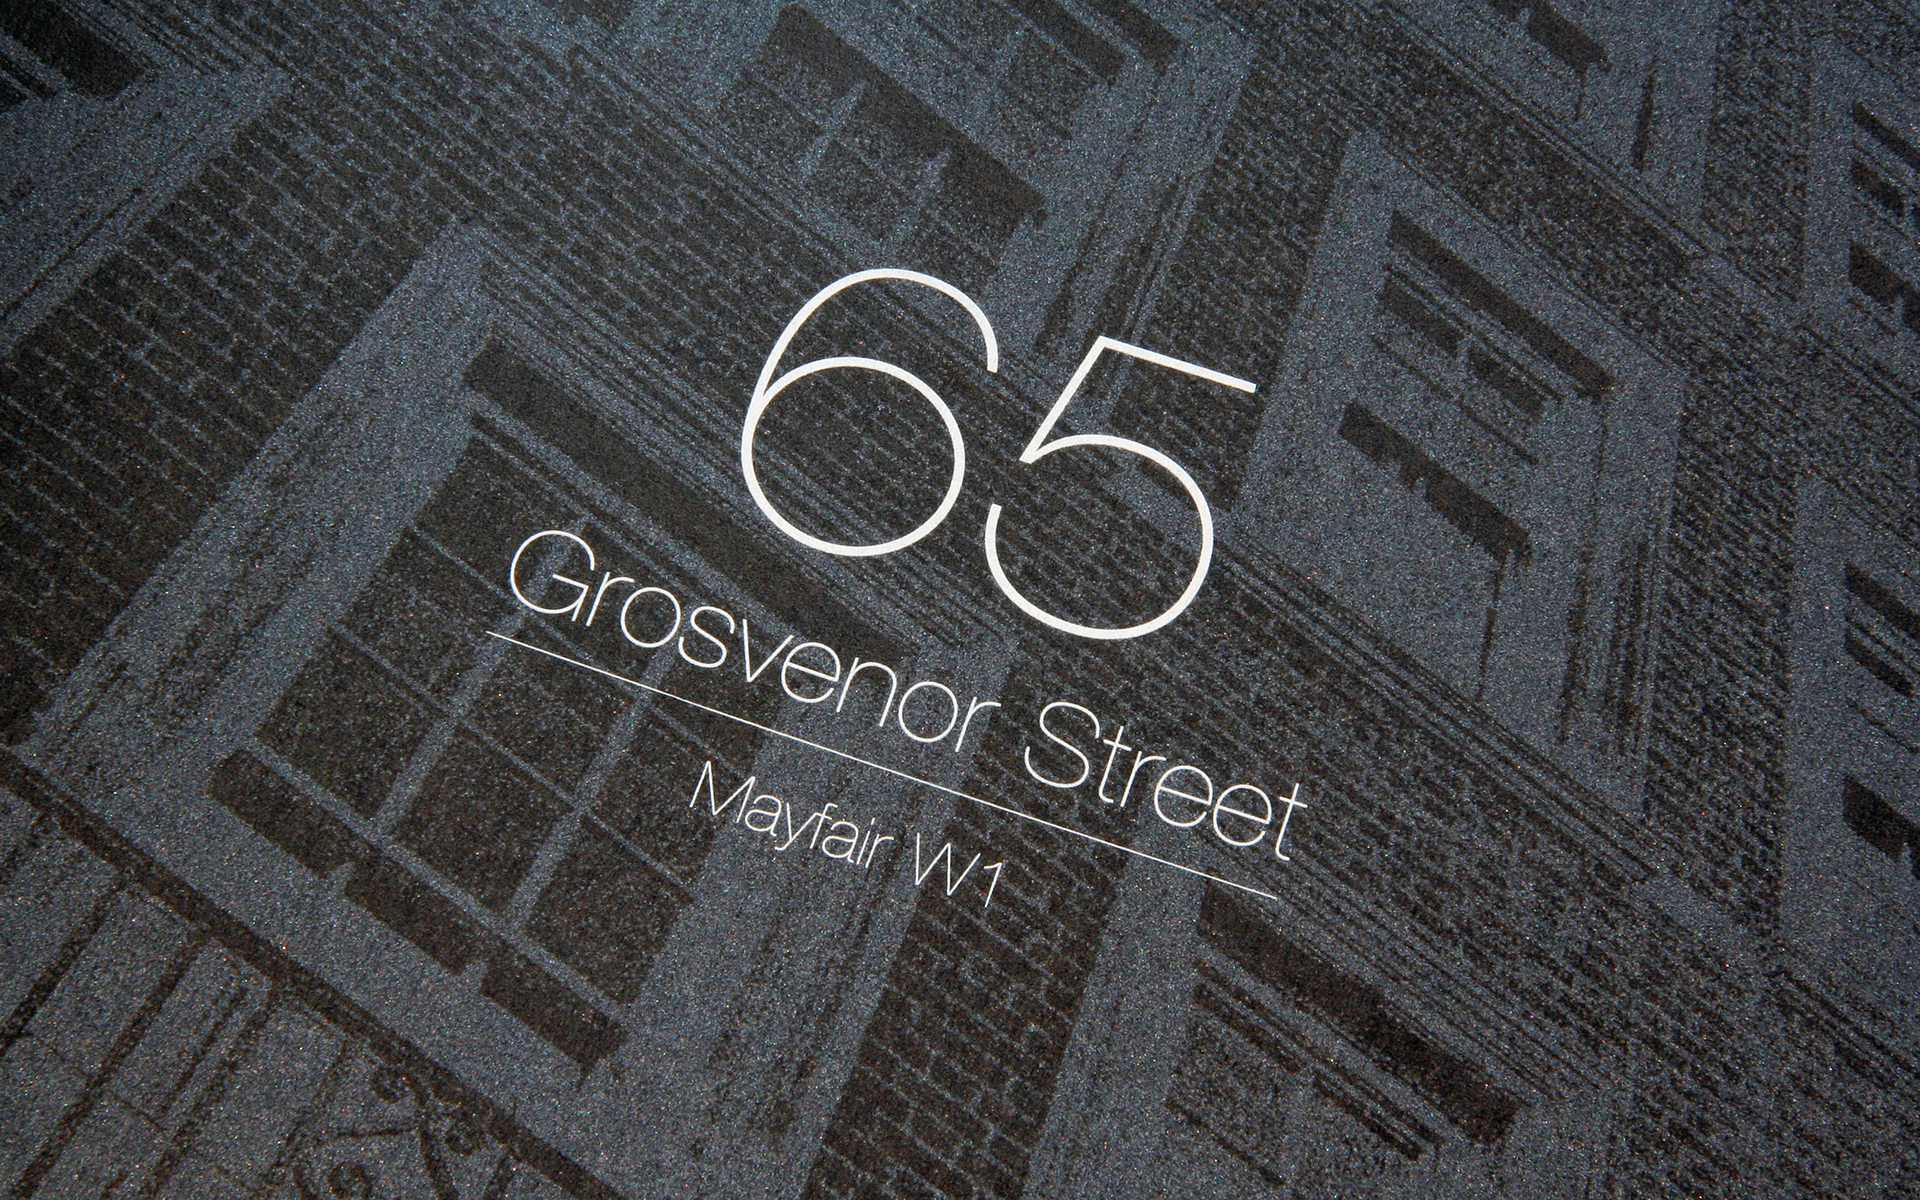 65 Grosvenor St1